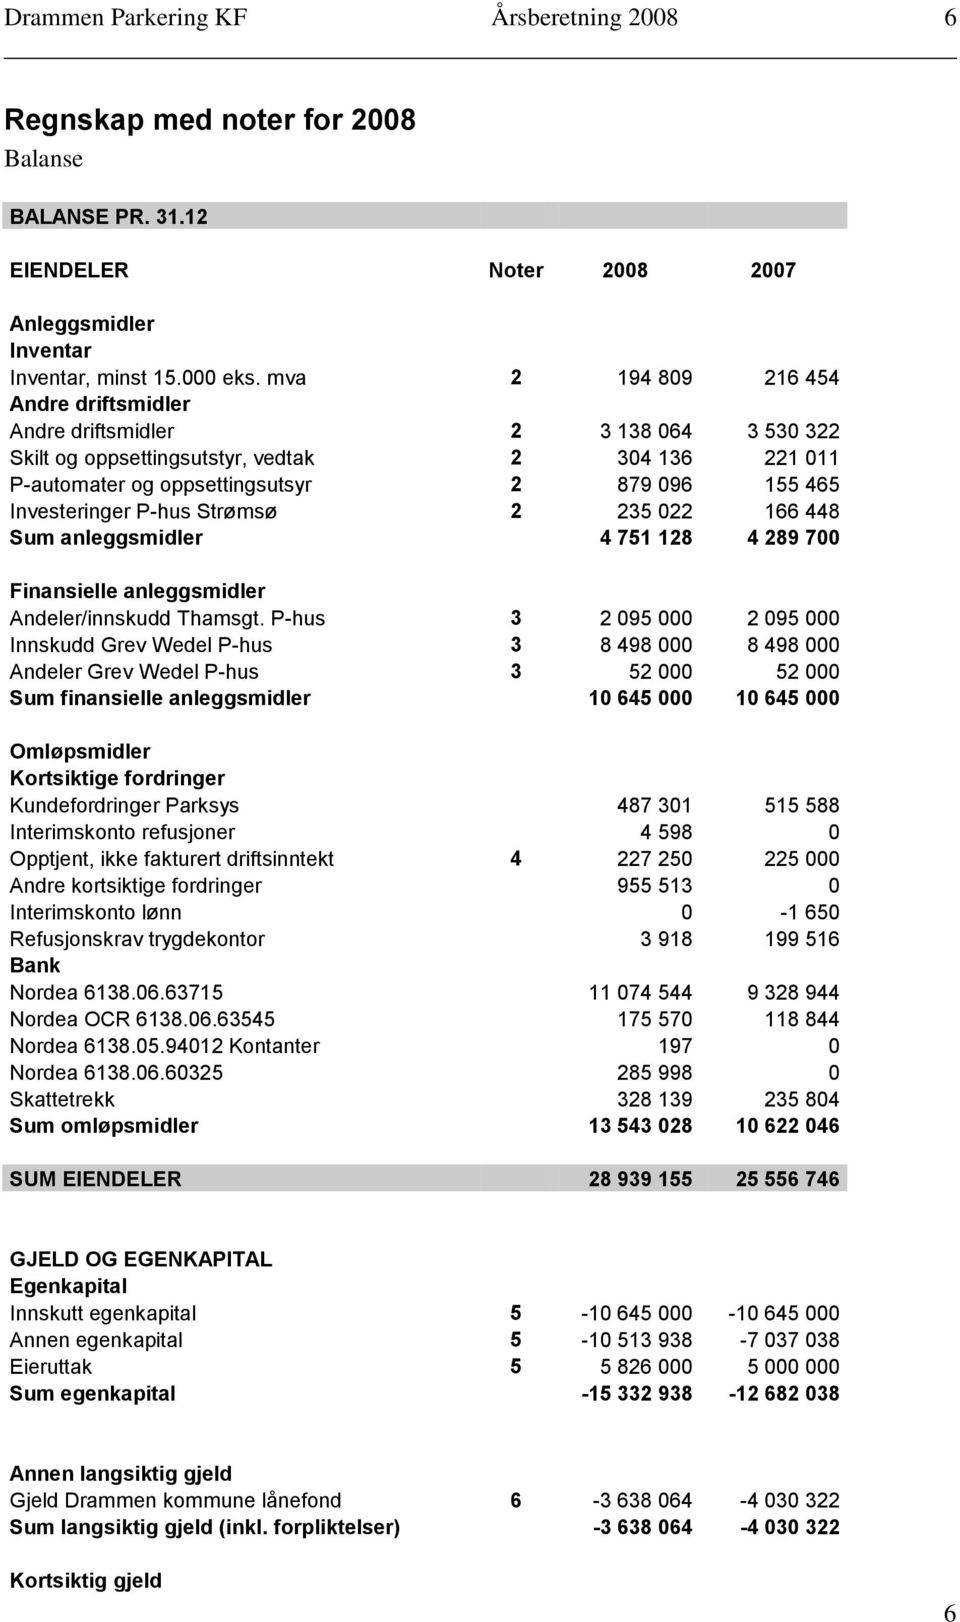 P-hus Strømsø 2 235 022 166 448 Sum anleggsmidler 4 751 128 4 289 700 Finansielle anleggsmidler Andeler/innskudd Thamsgt.